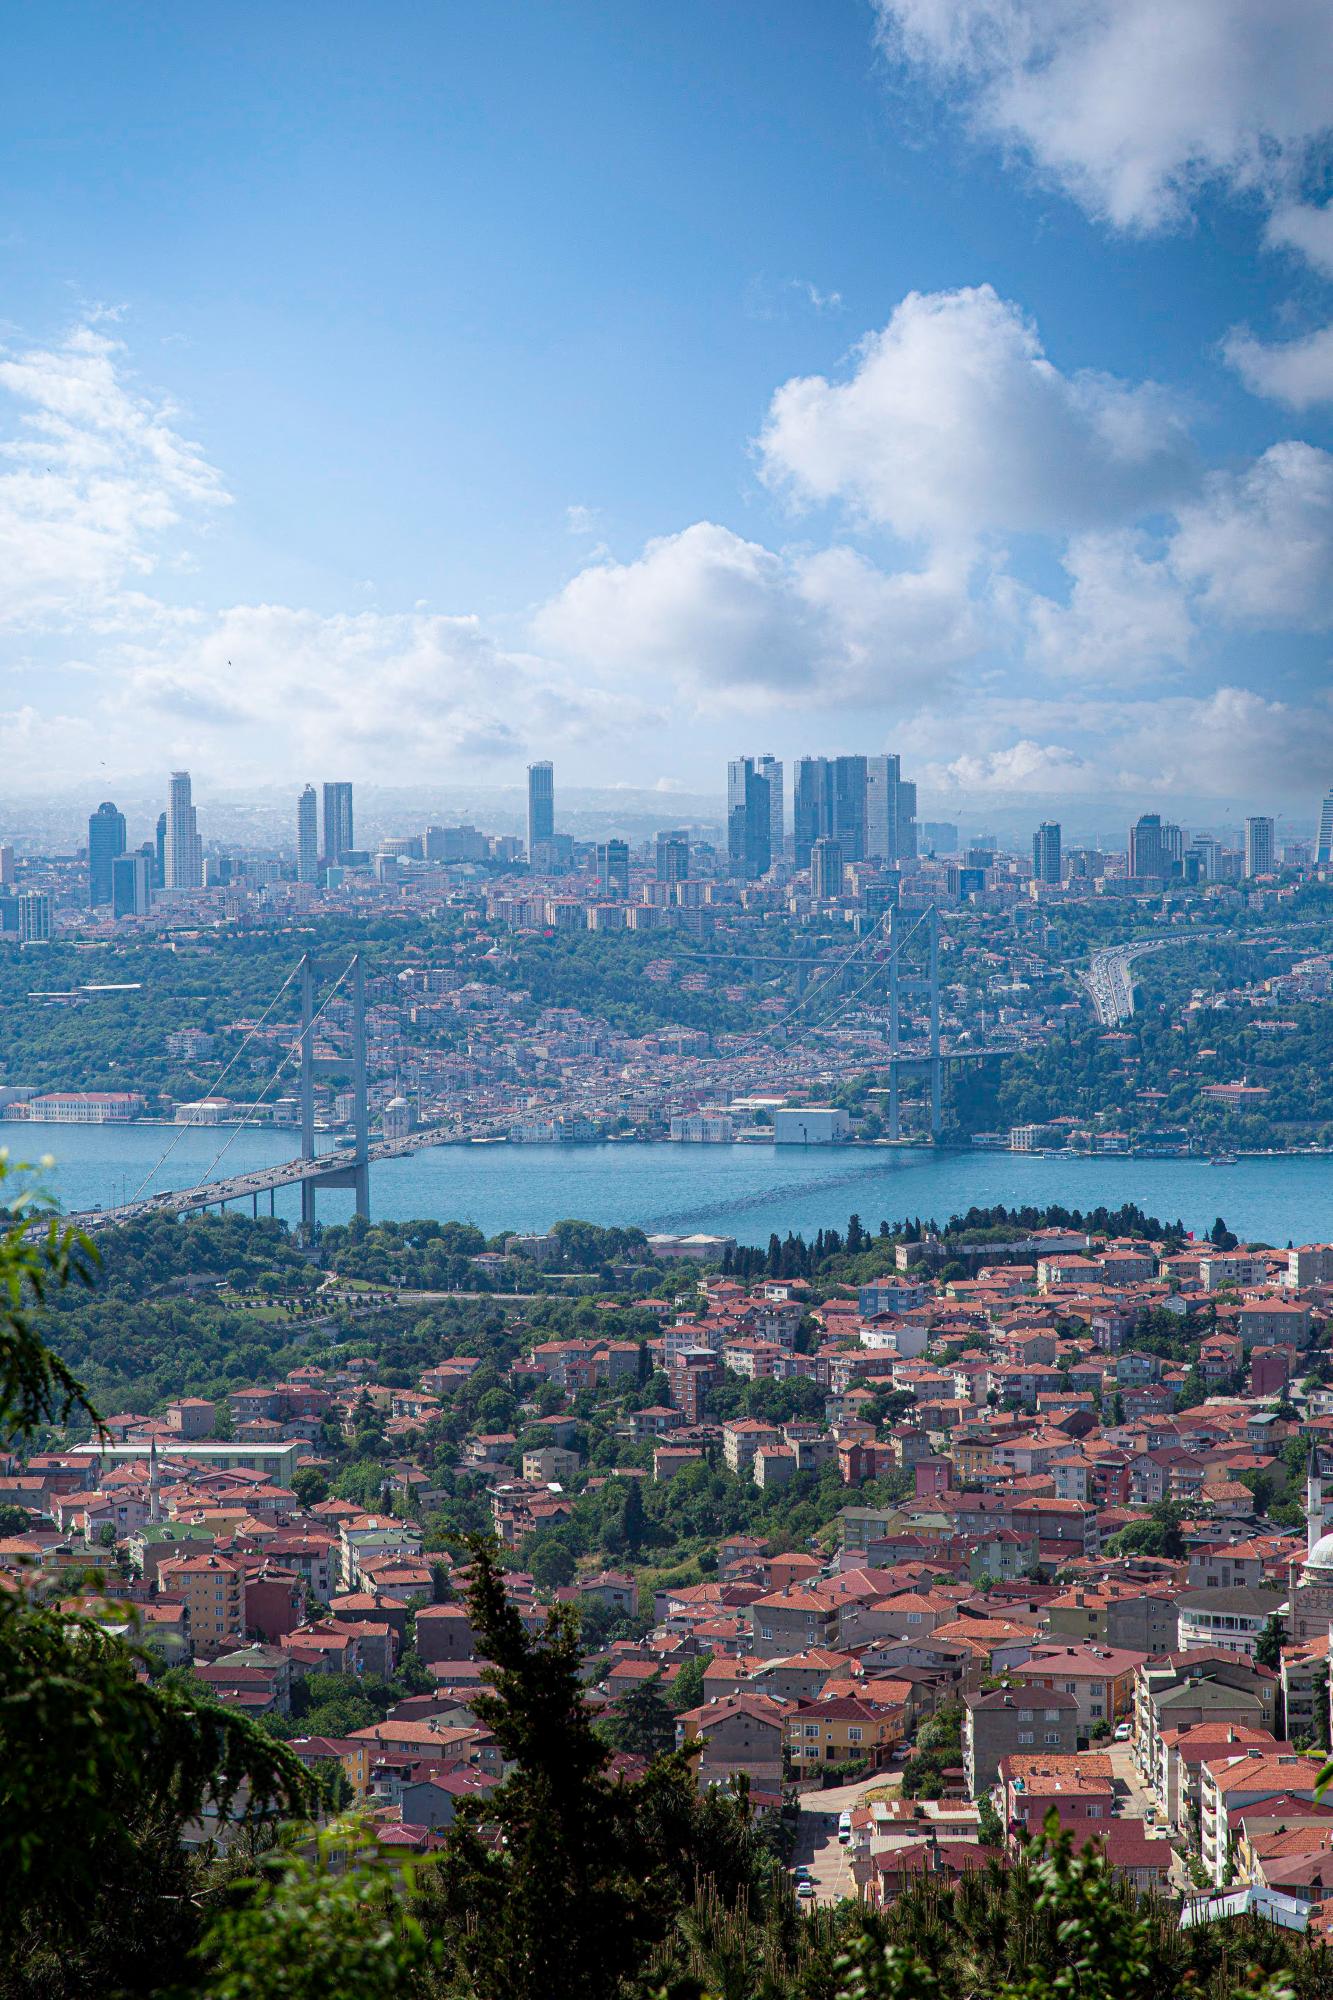 Грандіозний проект. Чому Туреччина перетворює Стамбул на острів